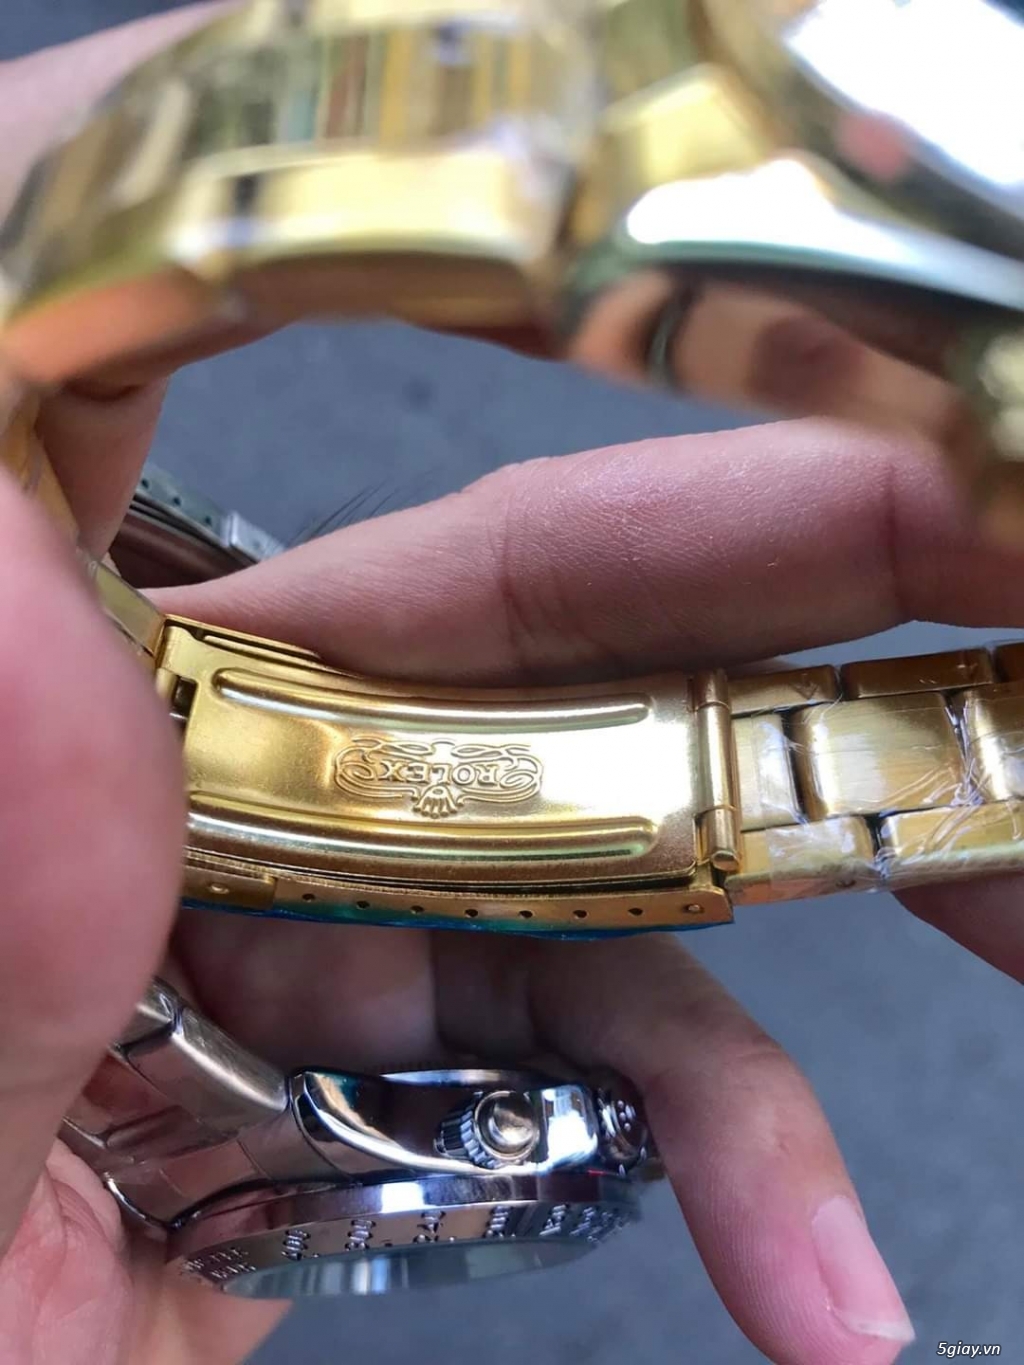 Thanh lý 1 em đồng hồ tự động mạ vàng, size 38mm - 4